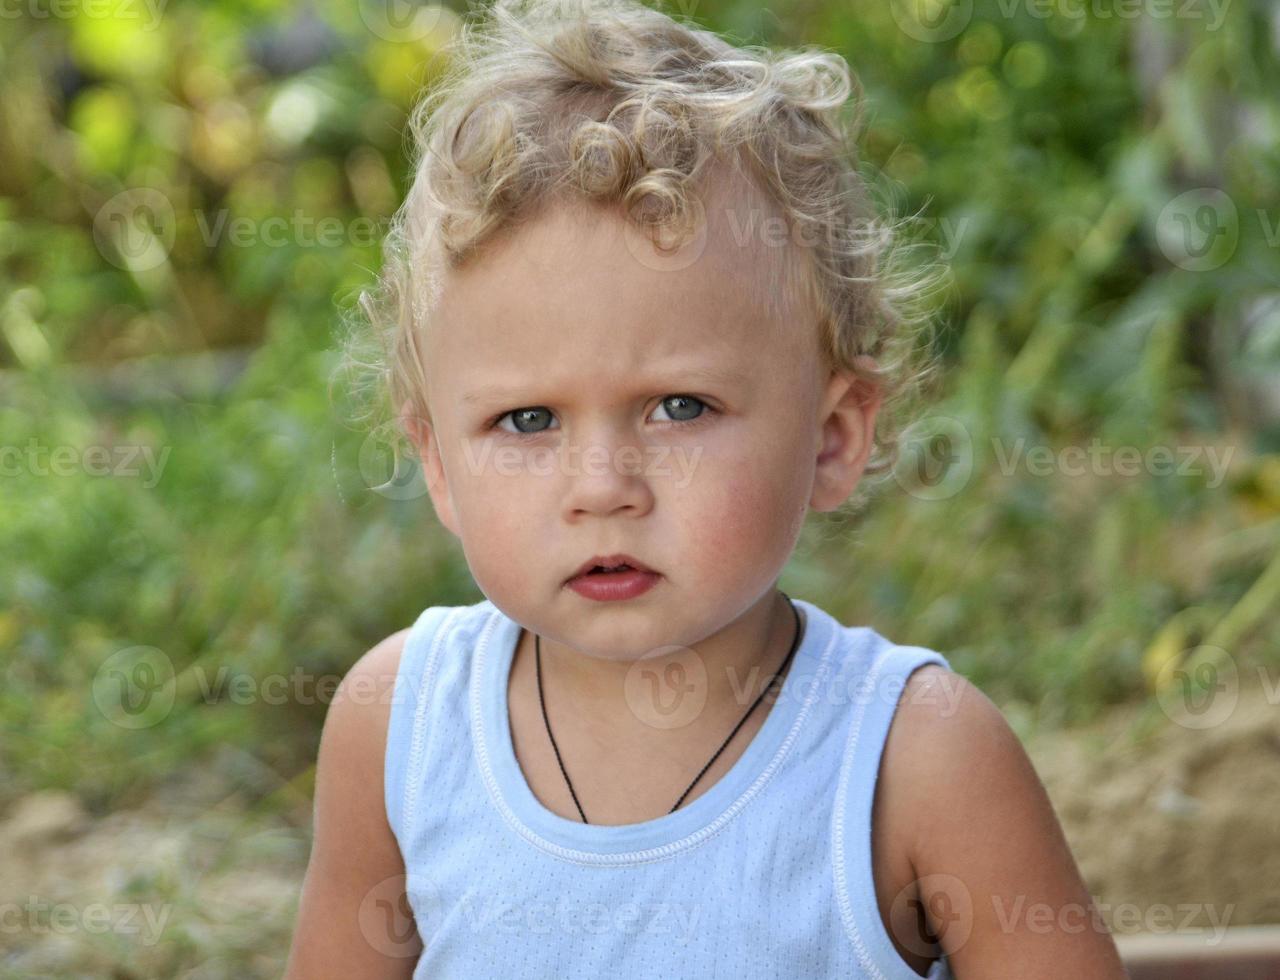 mooie babyjongen met kindgezicht poseren fotograaf voor kleurenfoto foto